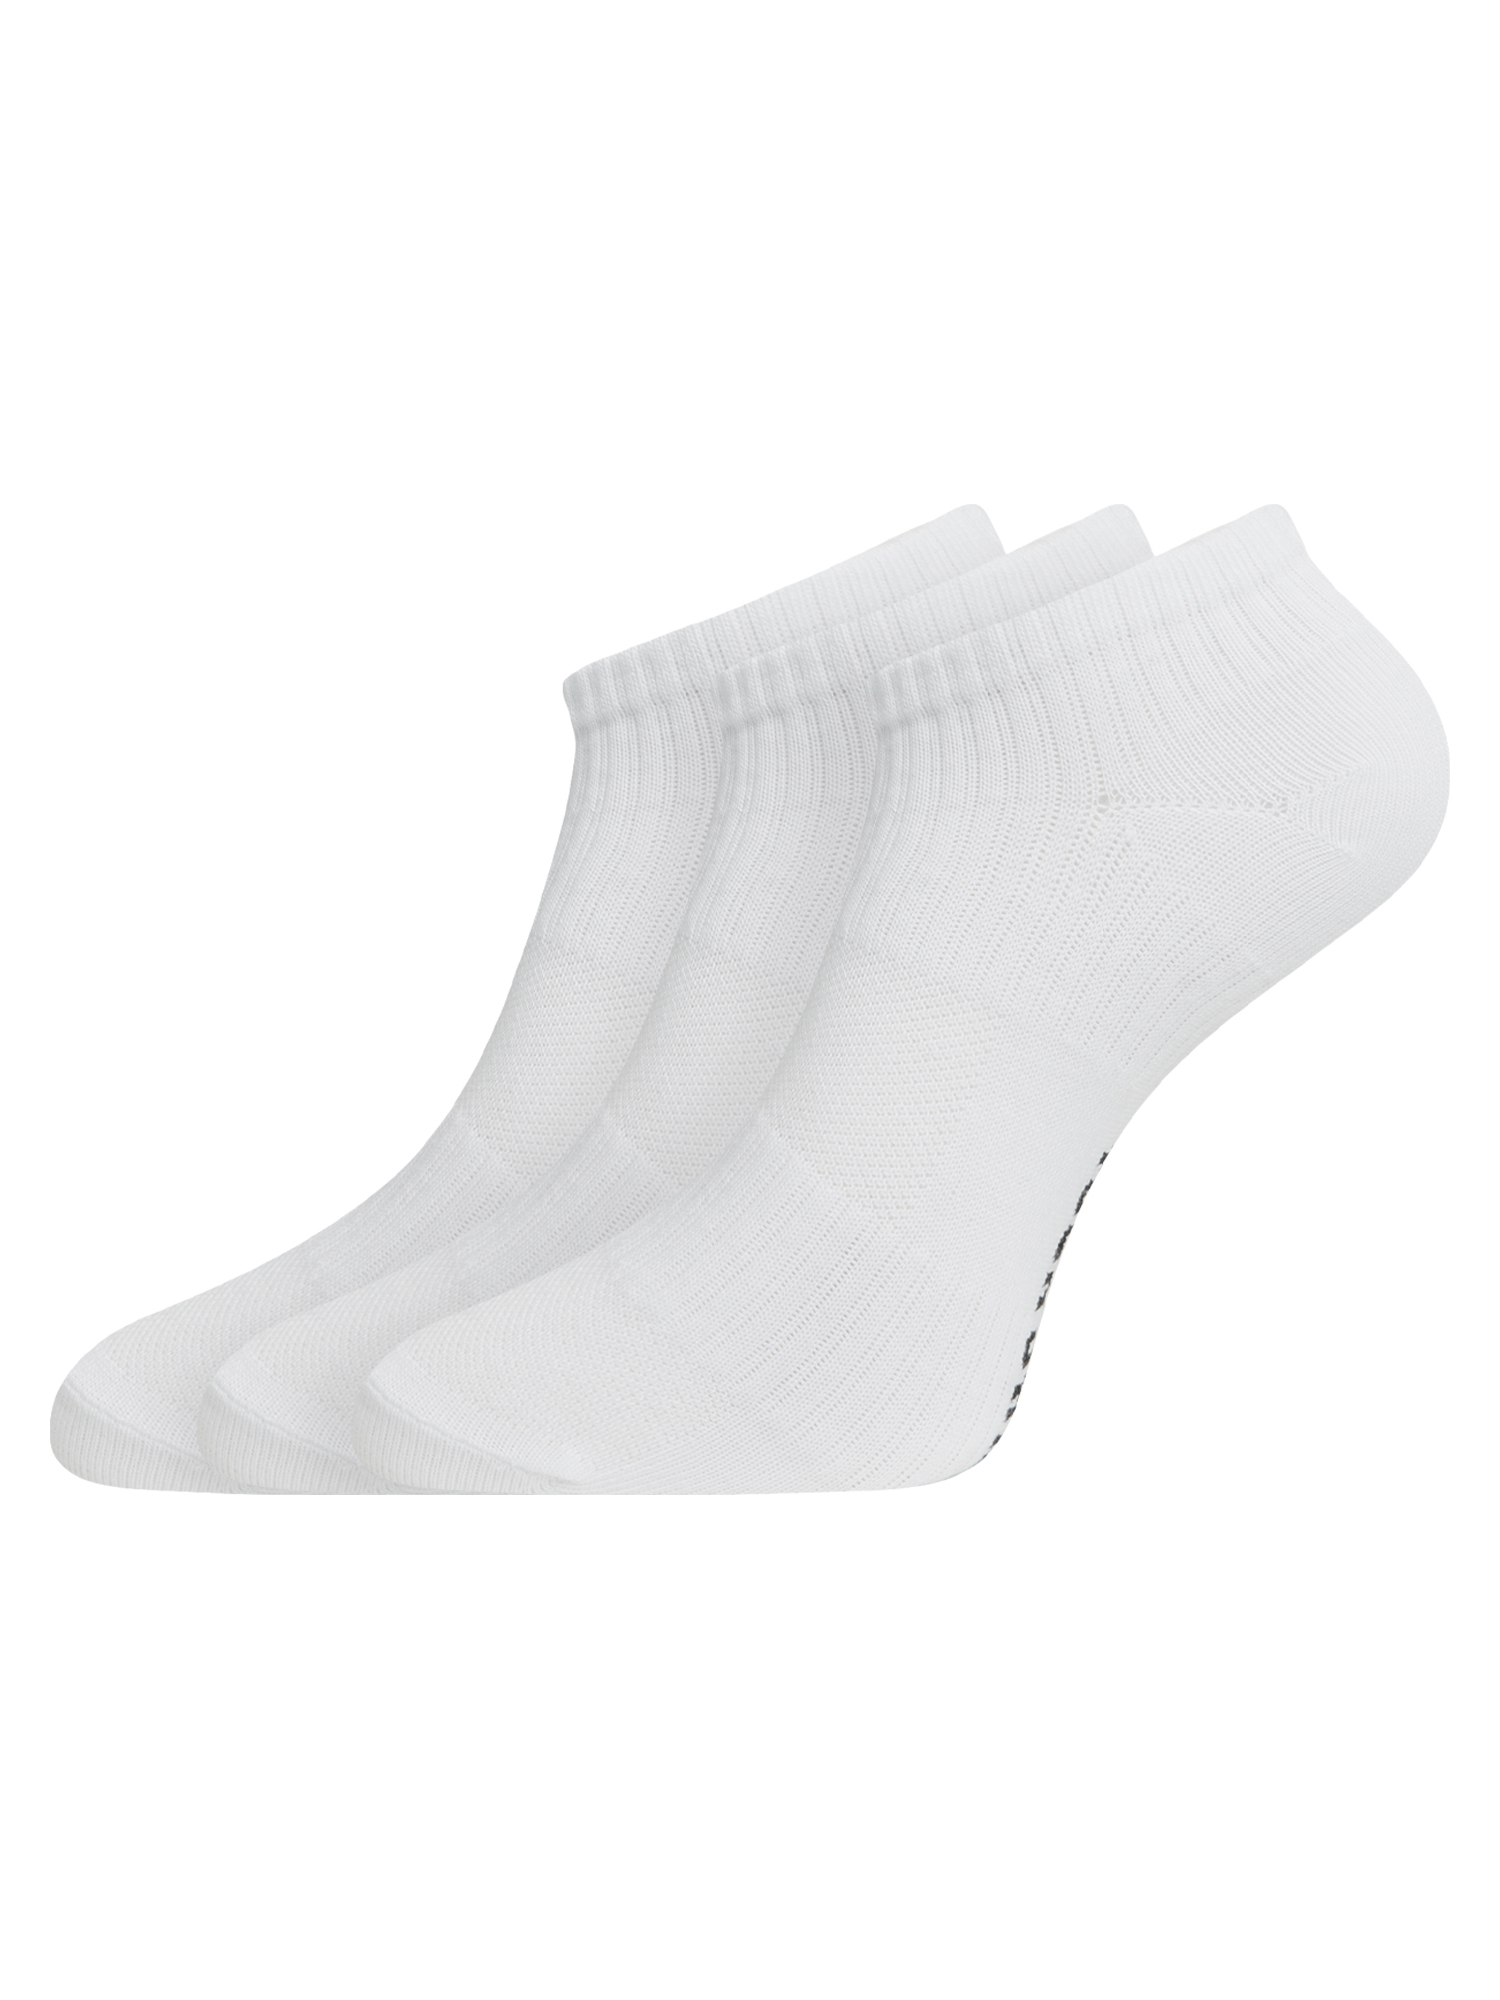 Комплект носков женских oodji 57102610T3 белых 35-37